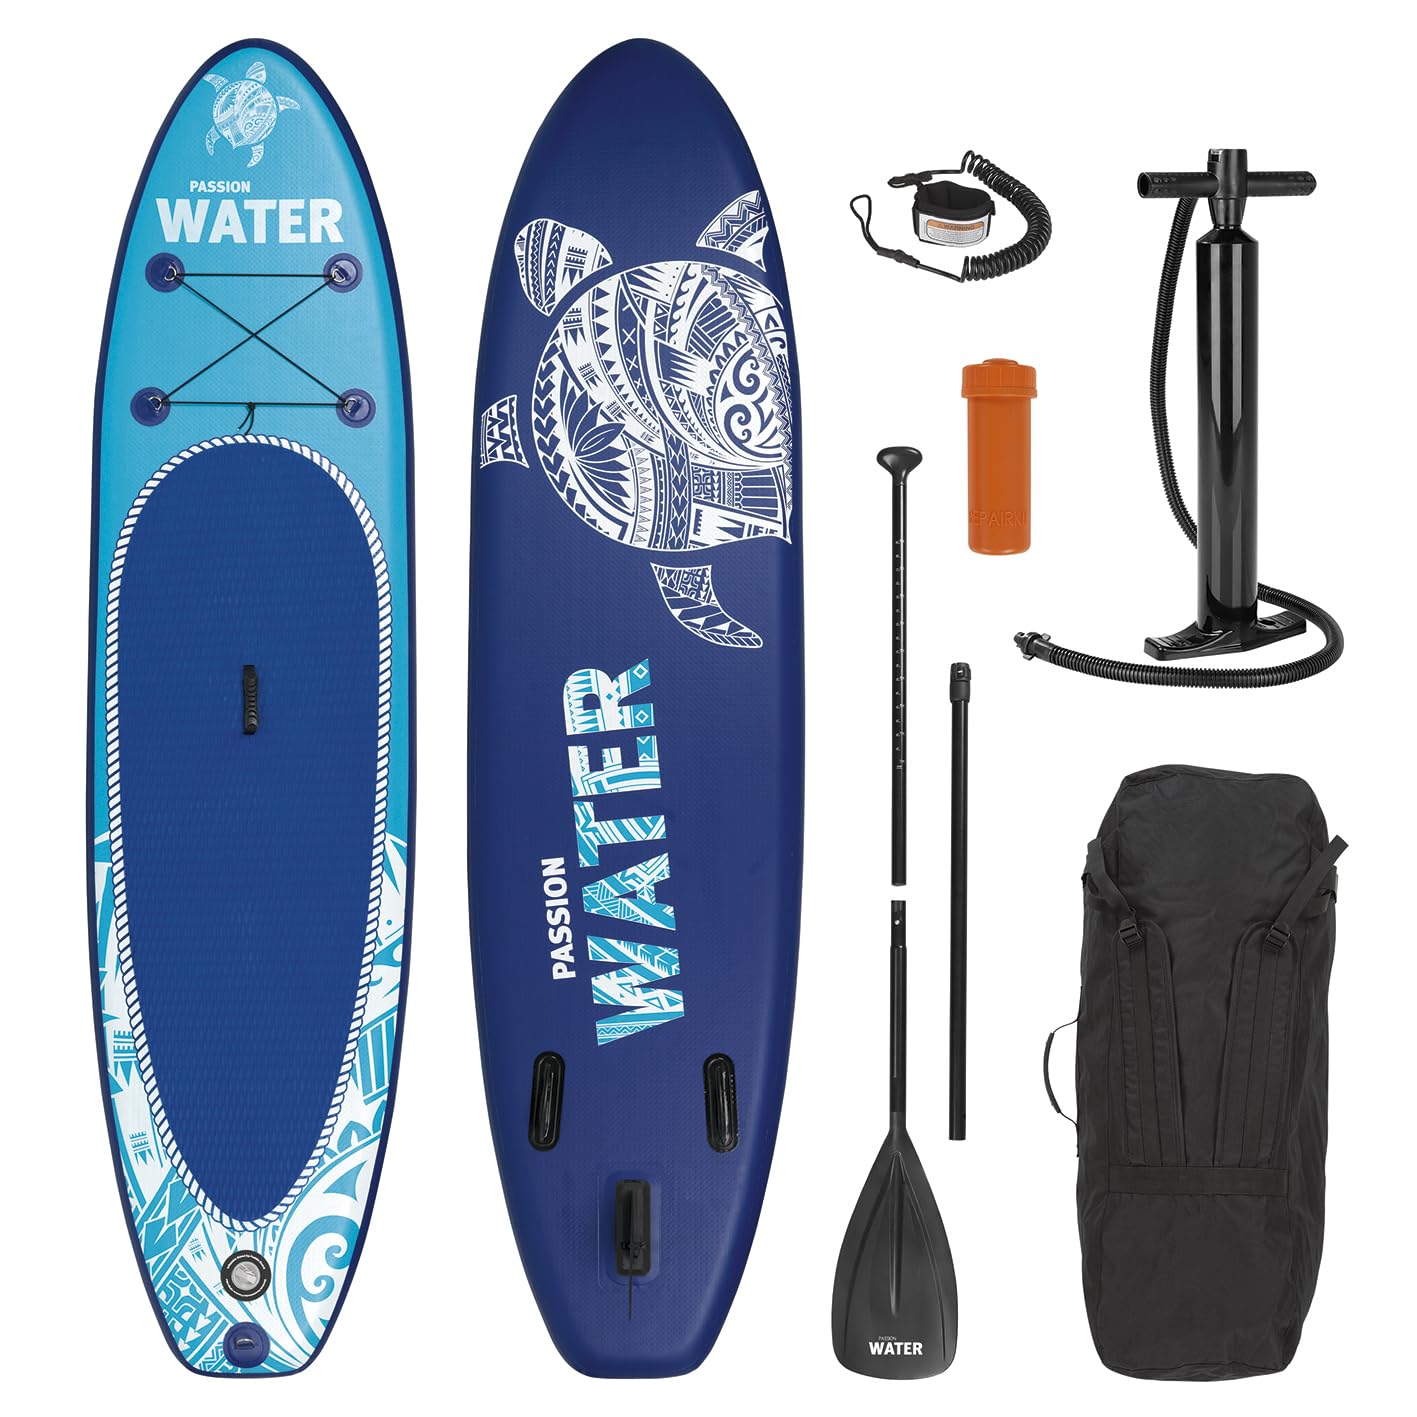 MAXXMEE Stand Up Paddle Board | Aufblasbares SUP ideal für Profis & Einsteiger | Kippfestes Wassersportgerät perfekt geeignet für den Transport | Mit vielseitigem Zubehör [3M L & 110 KG Tragfähigkeit]